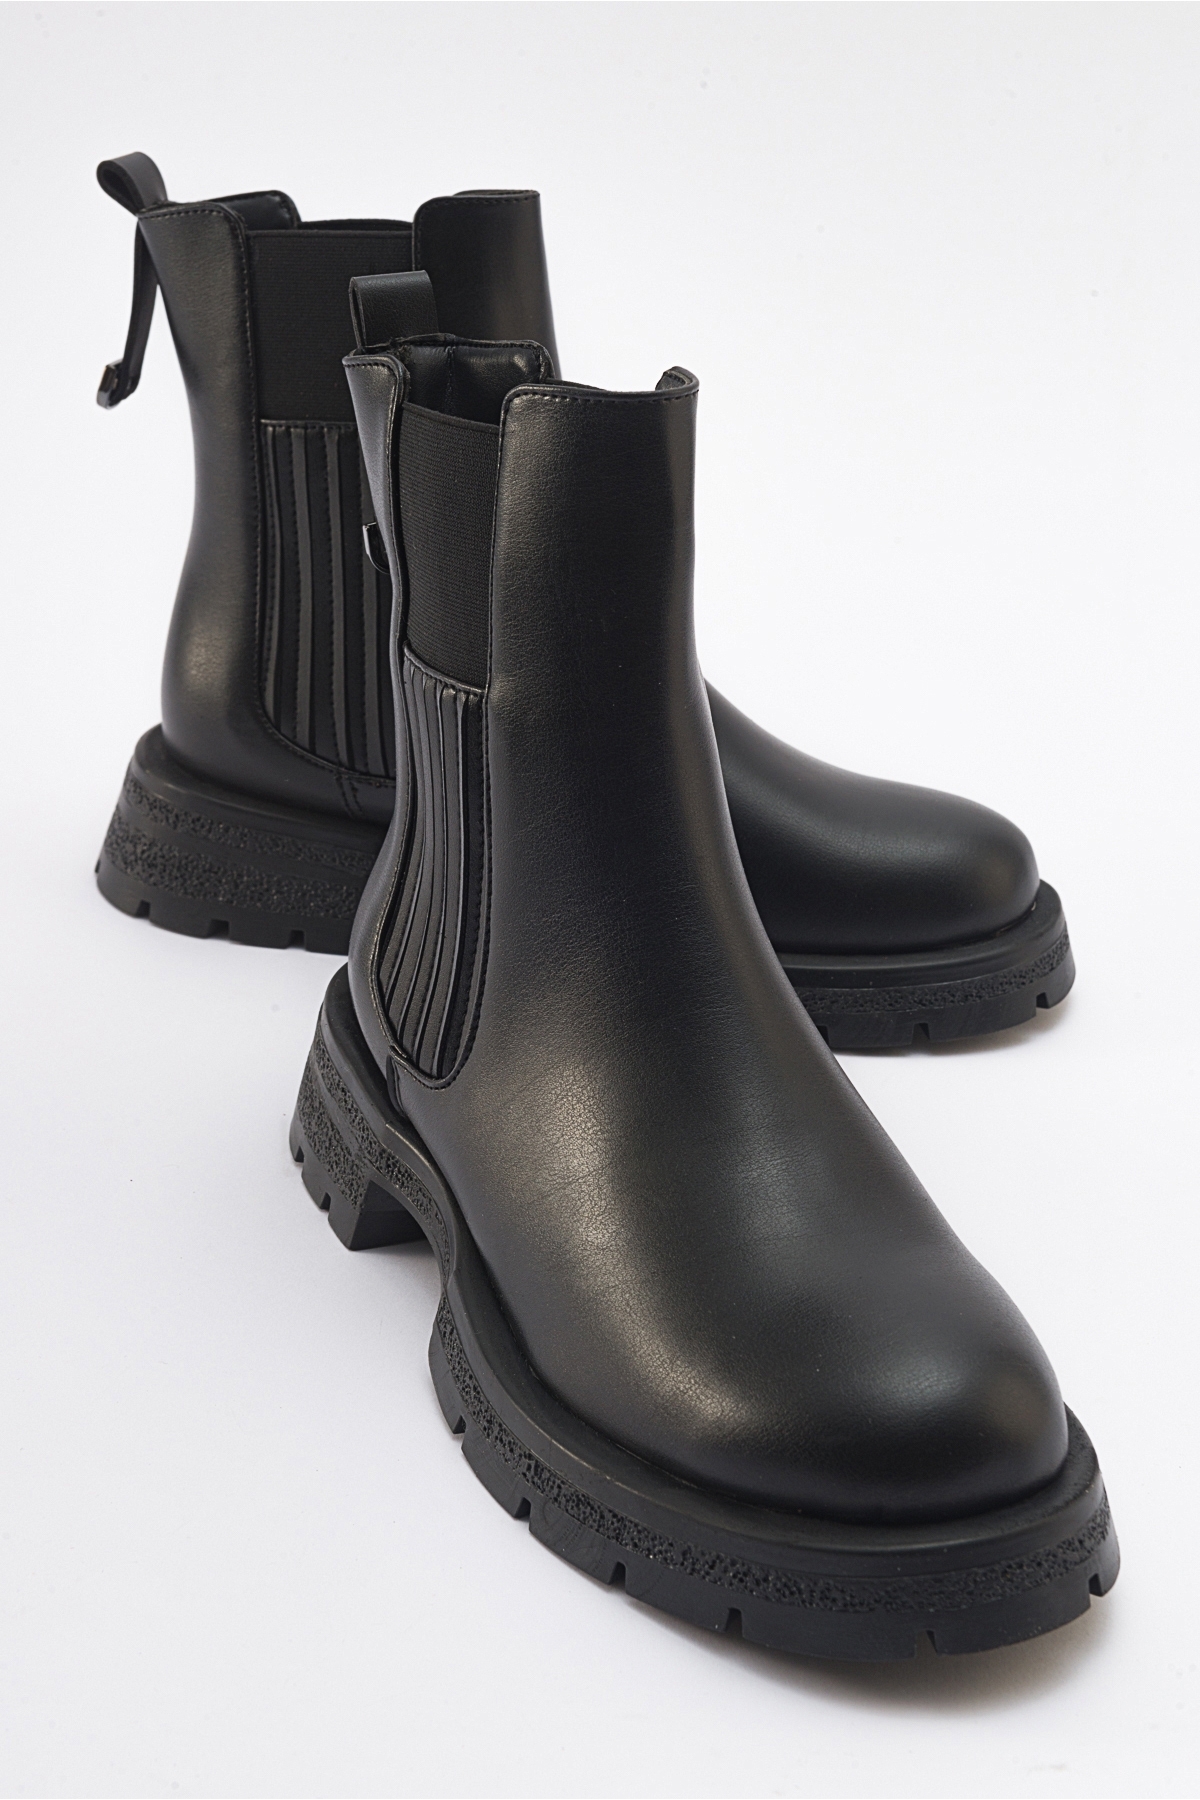 Levně LuviShoes DENIS Women's Black Leather Elastic Chelsea Boots.